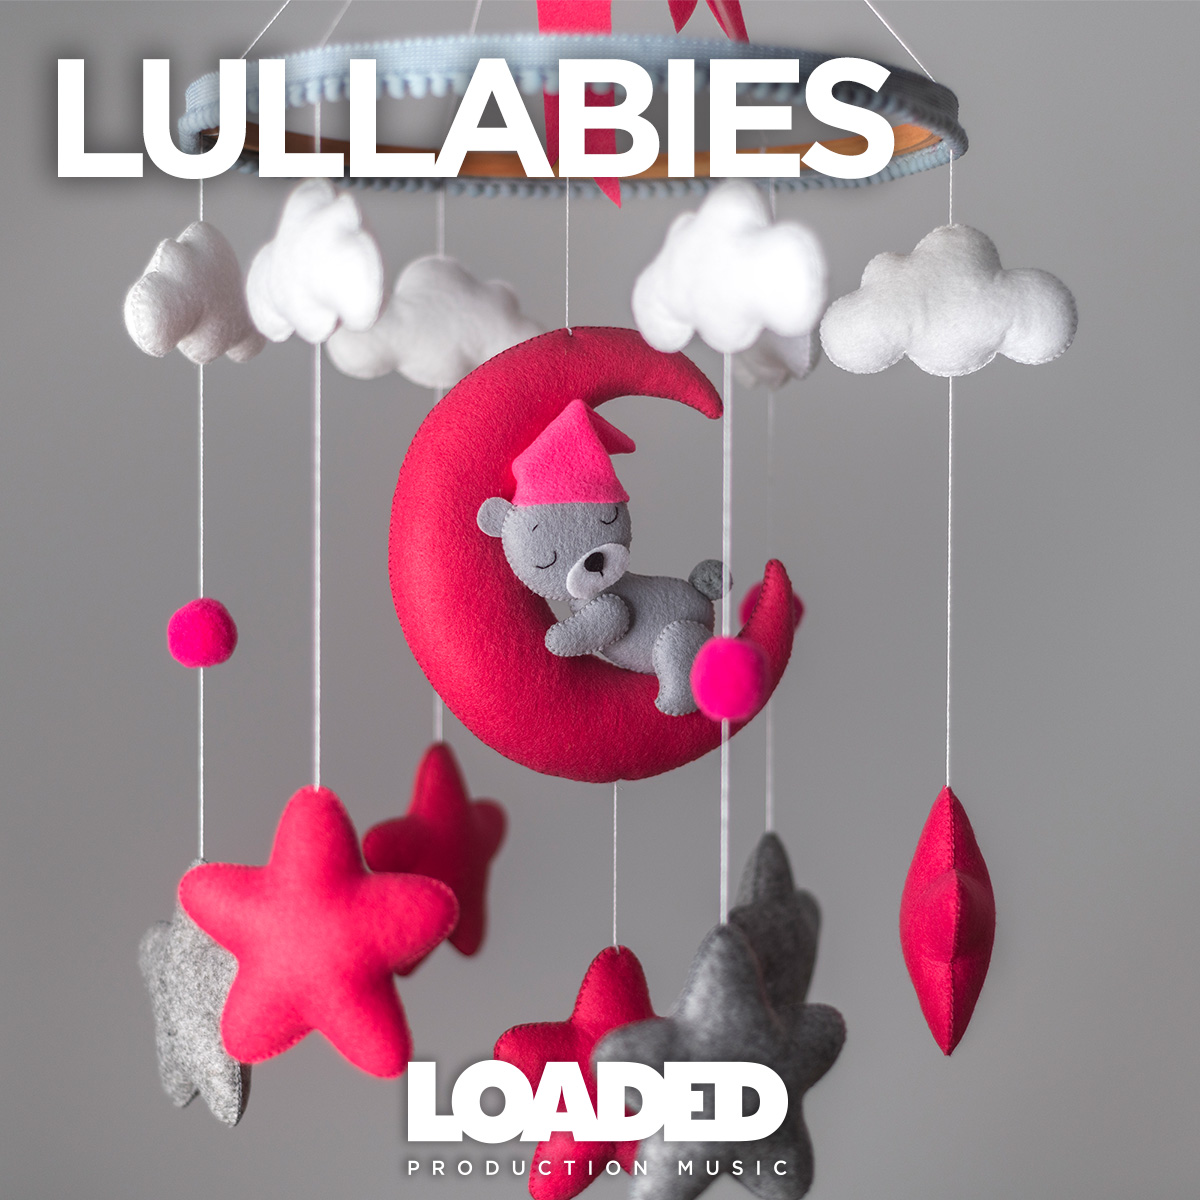 LPM 117 - Lullabies - Album Cover